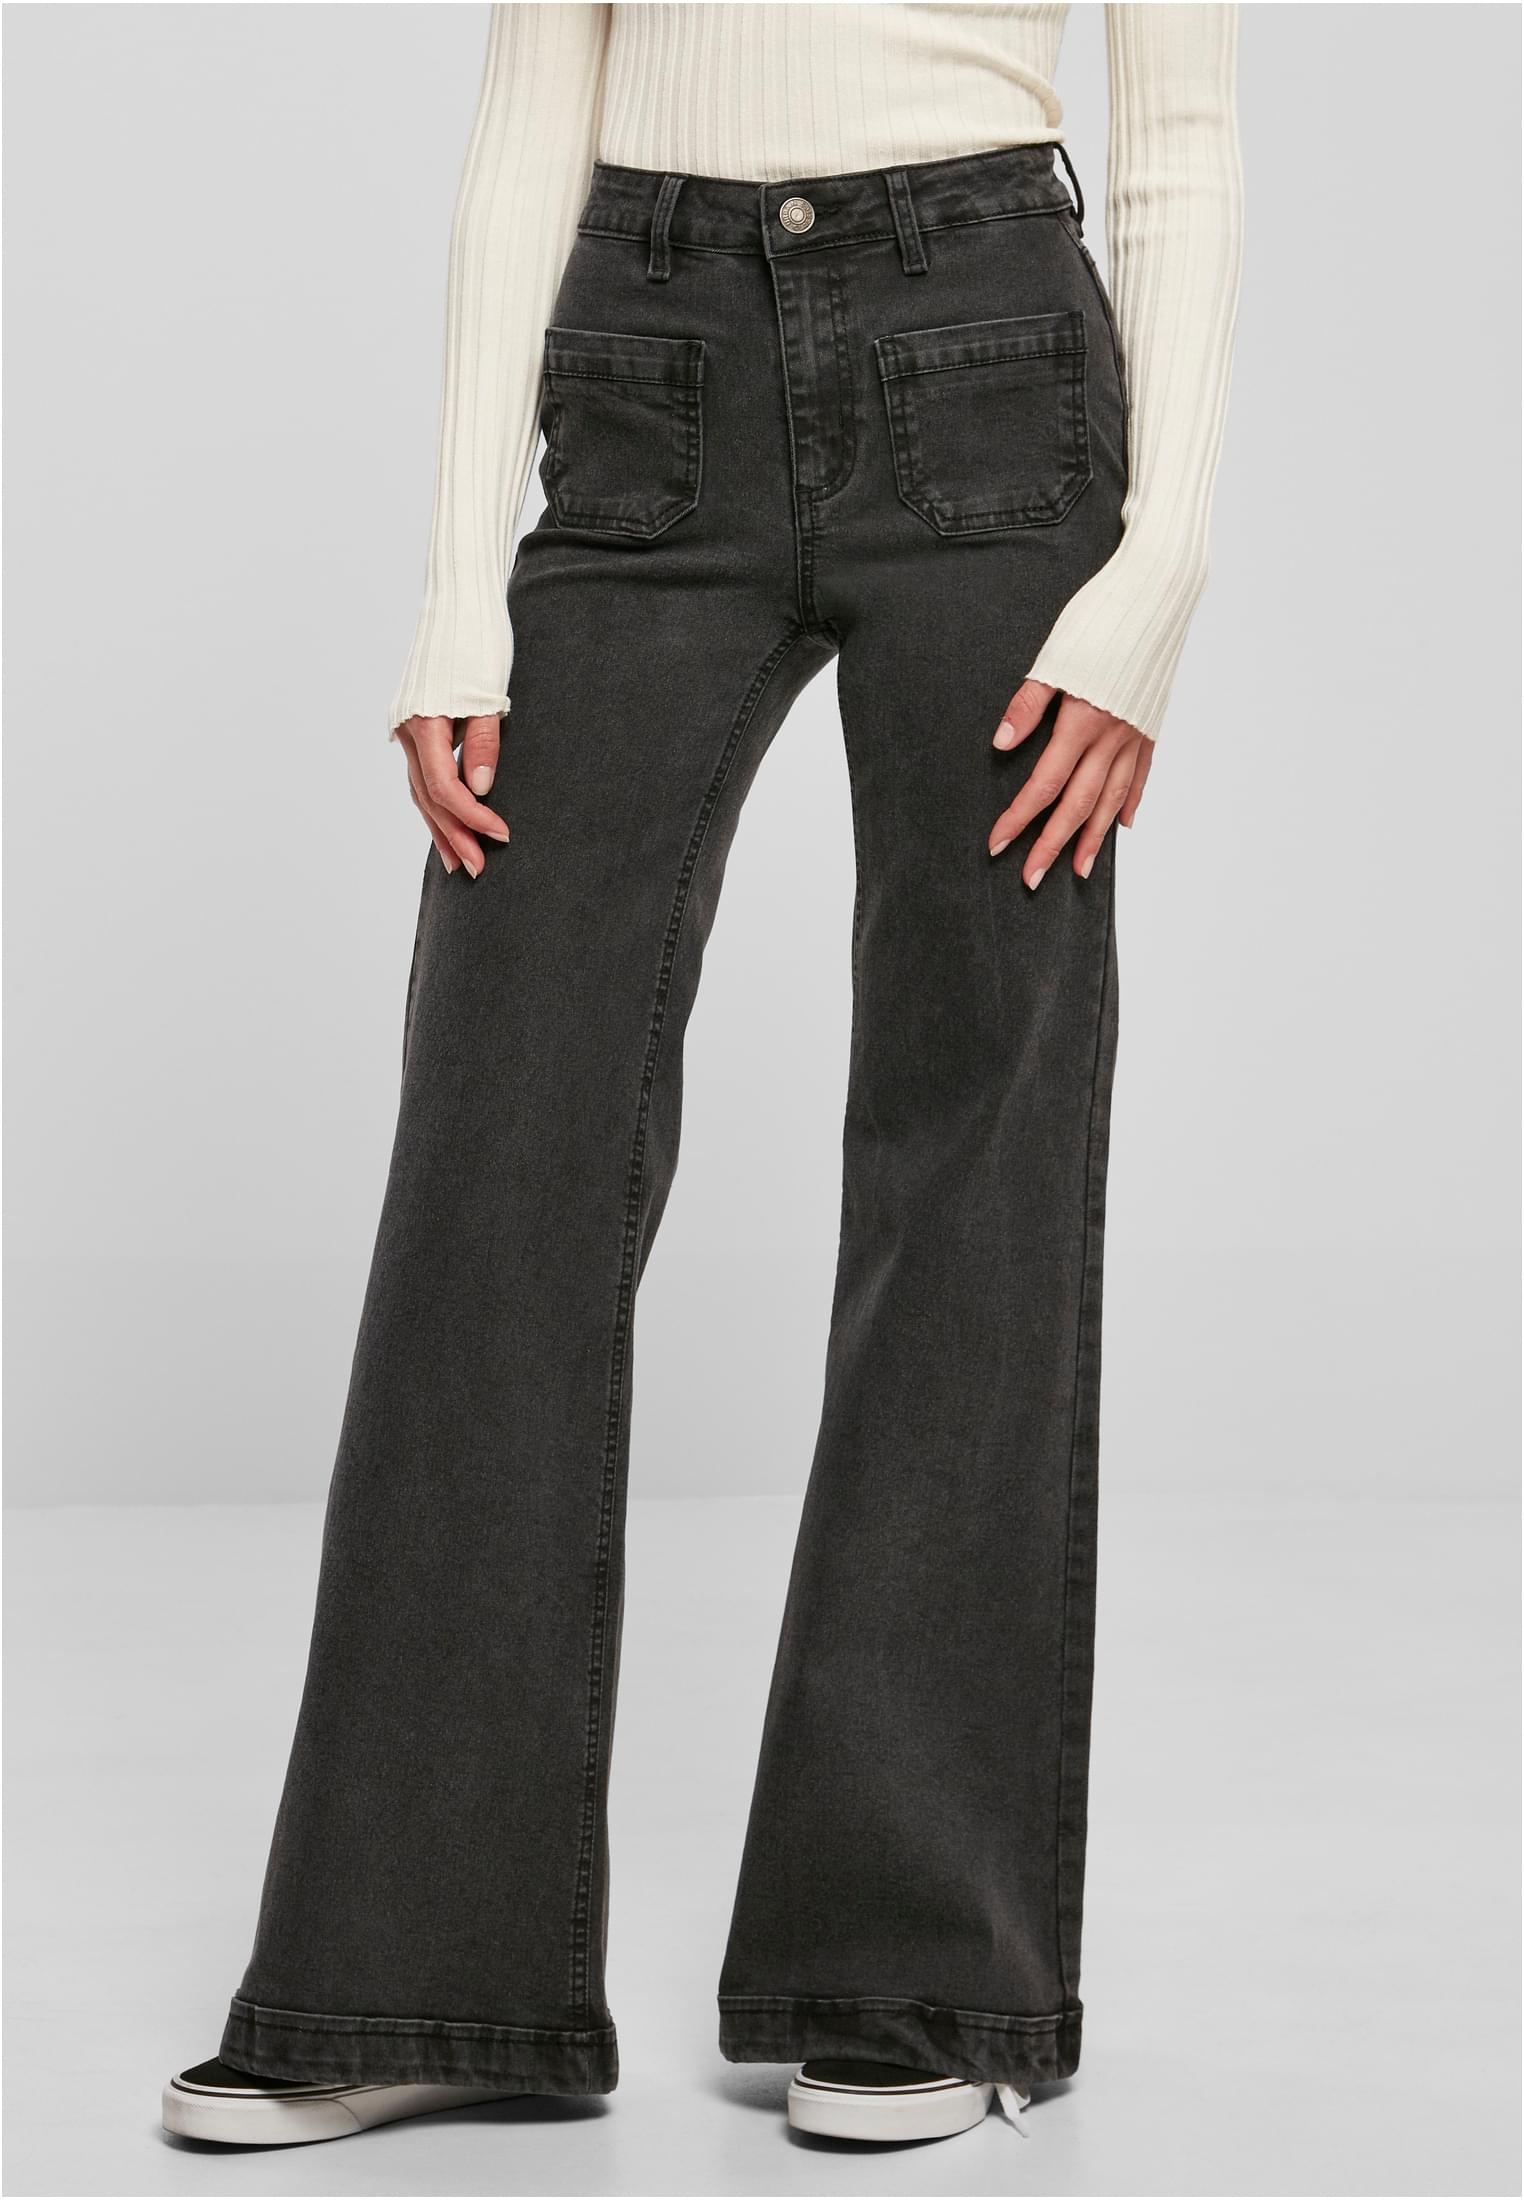 Women's Vintage Flared Denim Jeans - Black